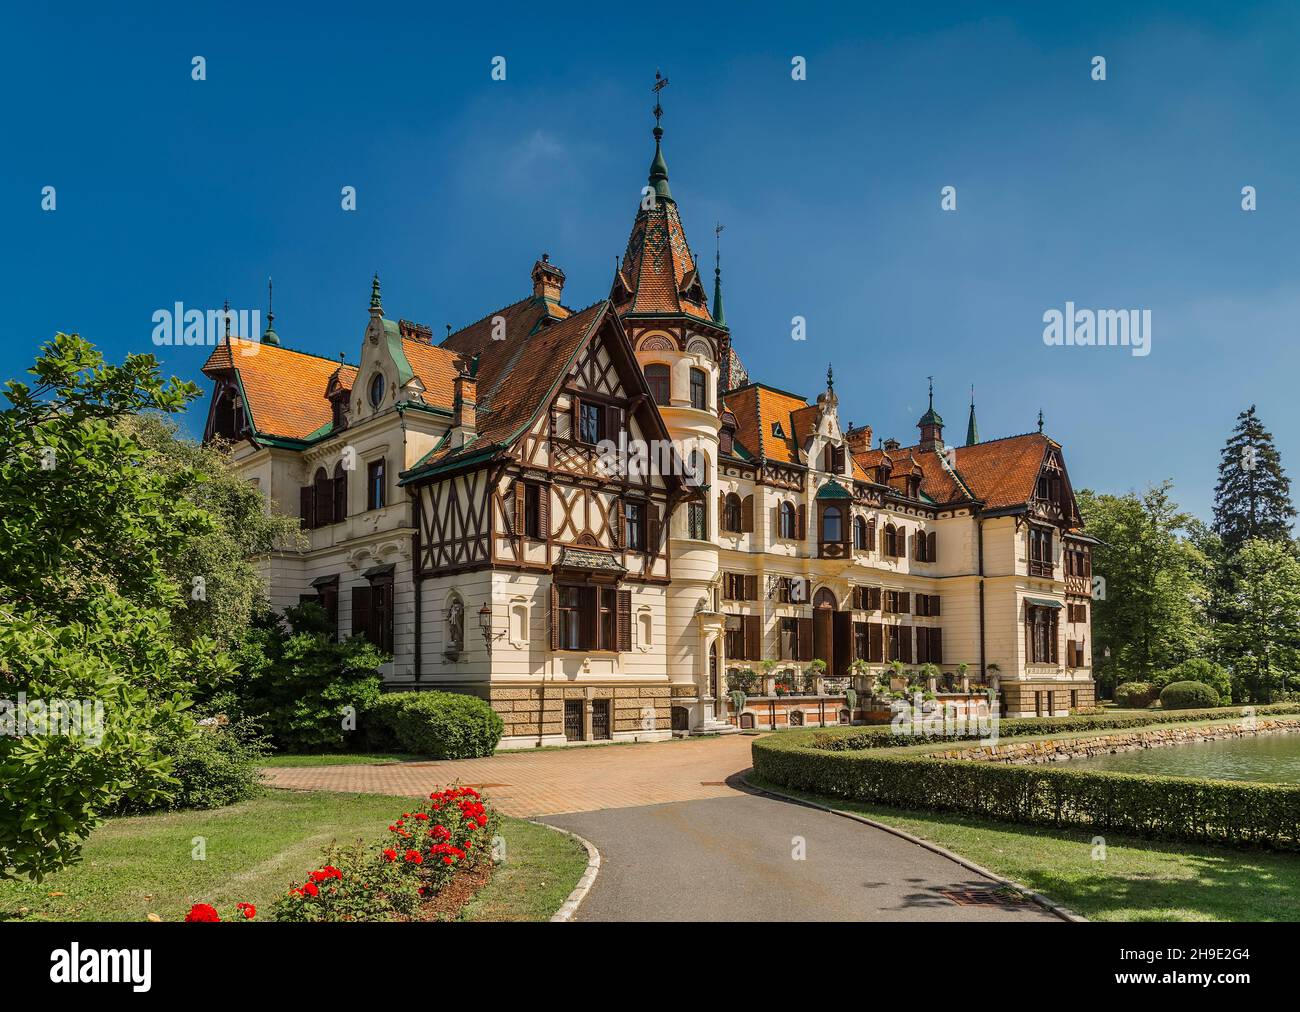 The castle of Lesna (Zámek Lešná) was built according to the design of the Viennese architect Johann Mick in 1893. Zlín. Czech Republic Stock Photo